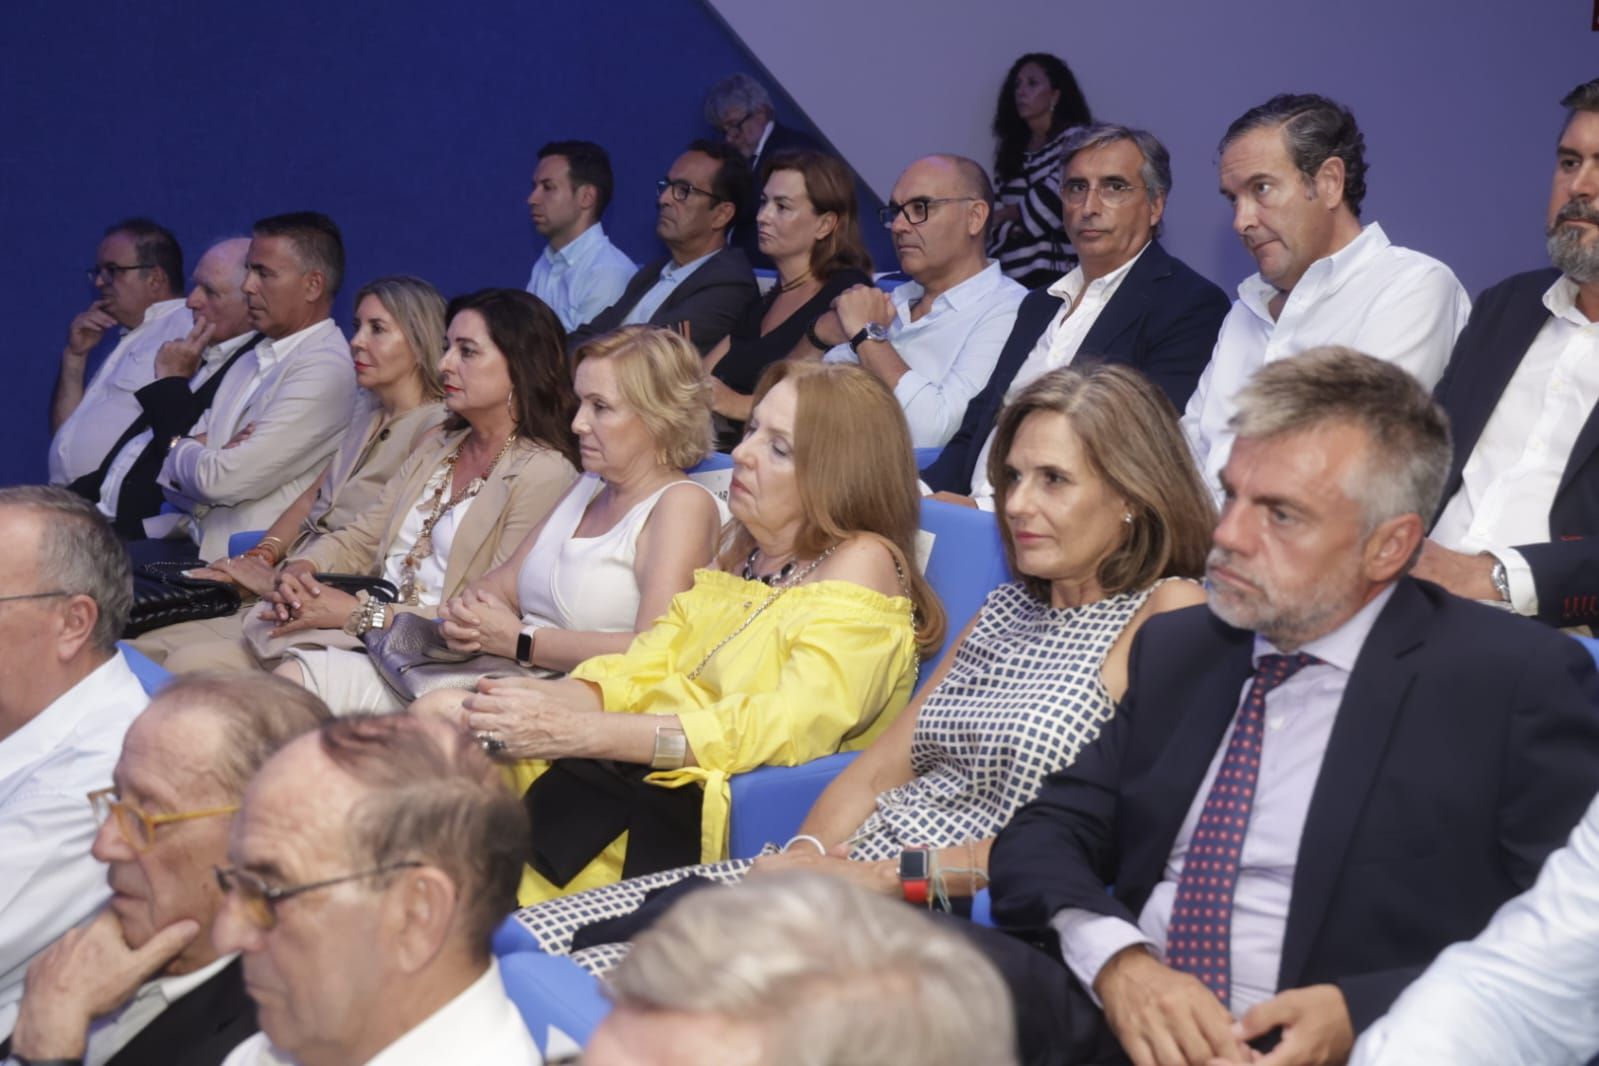 Conferencia de Carlos Mazón en Foro Alicante